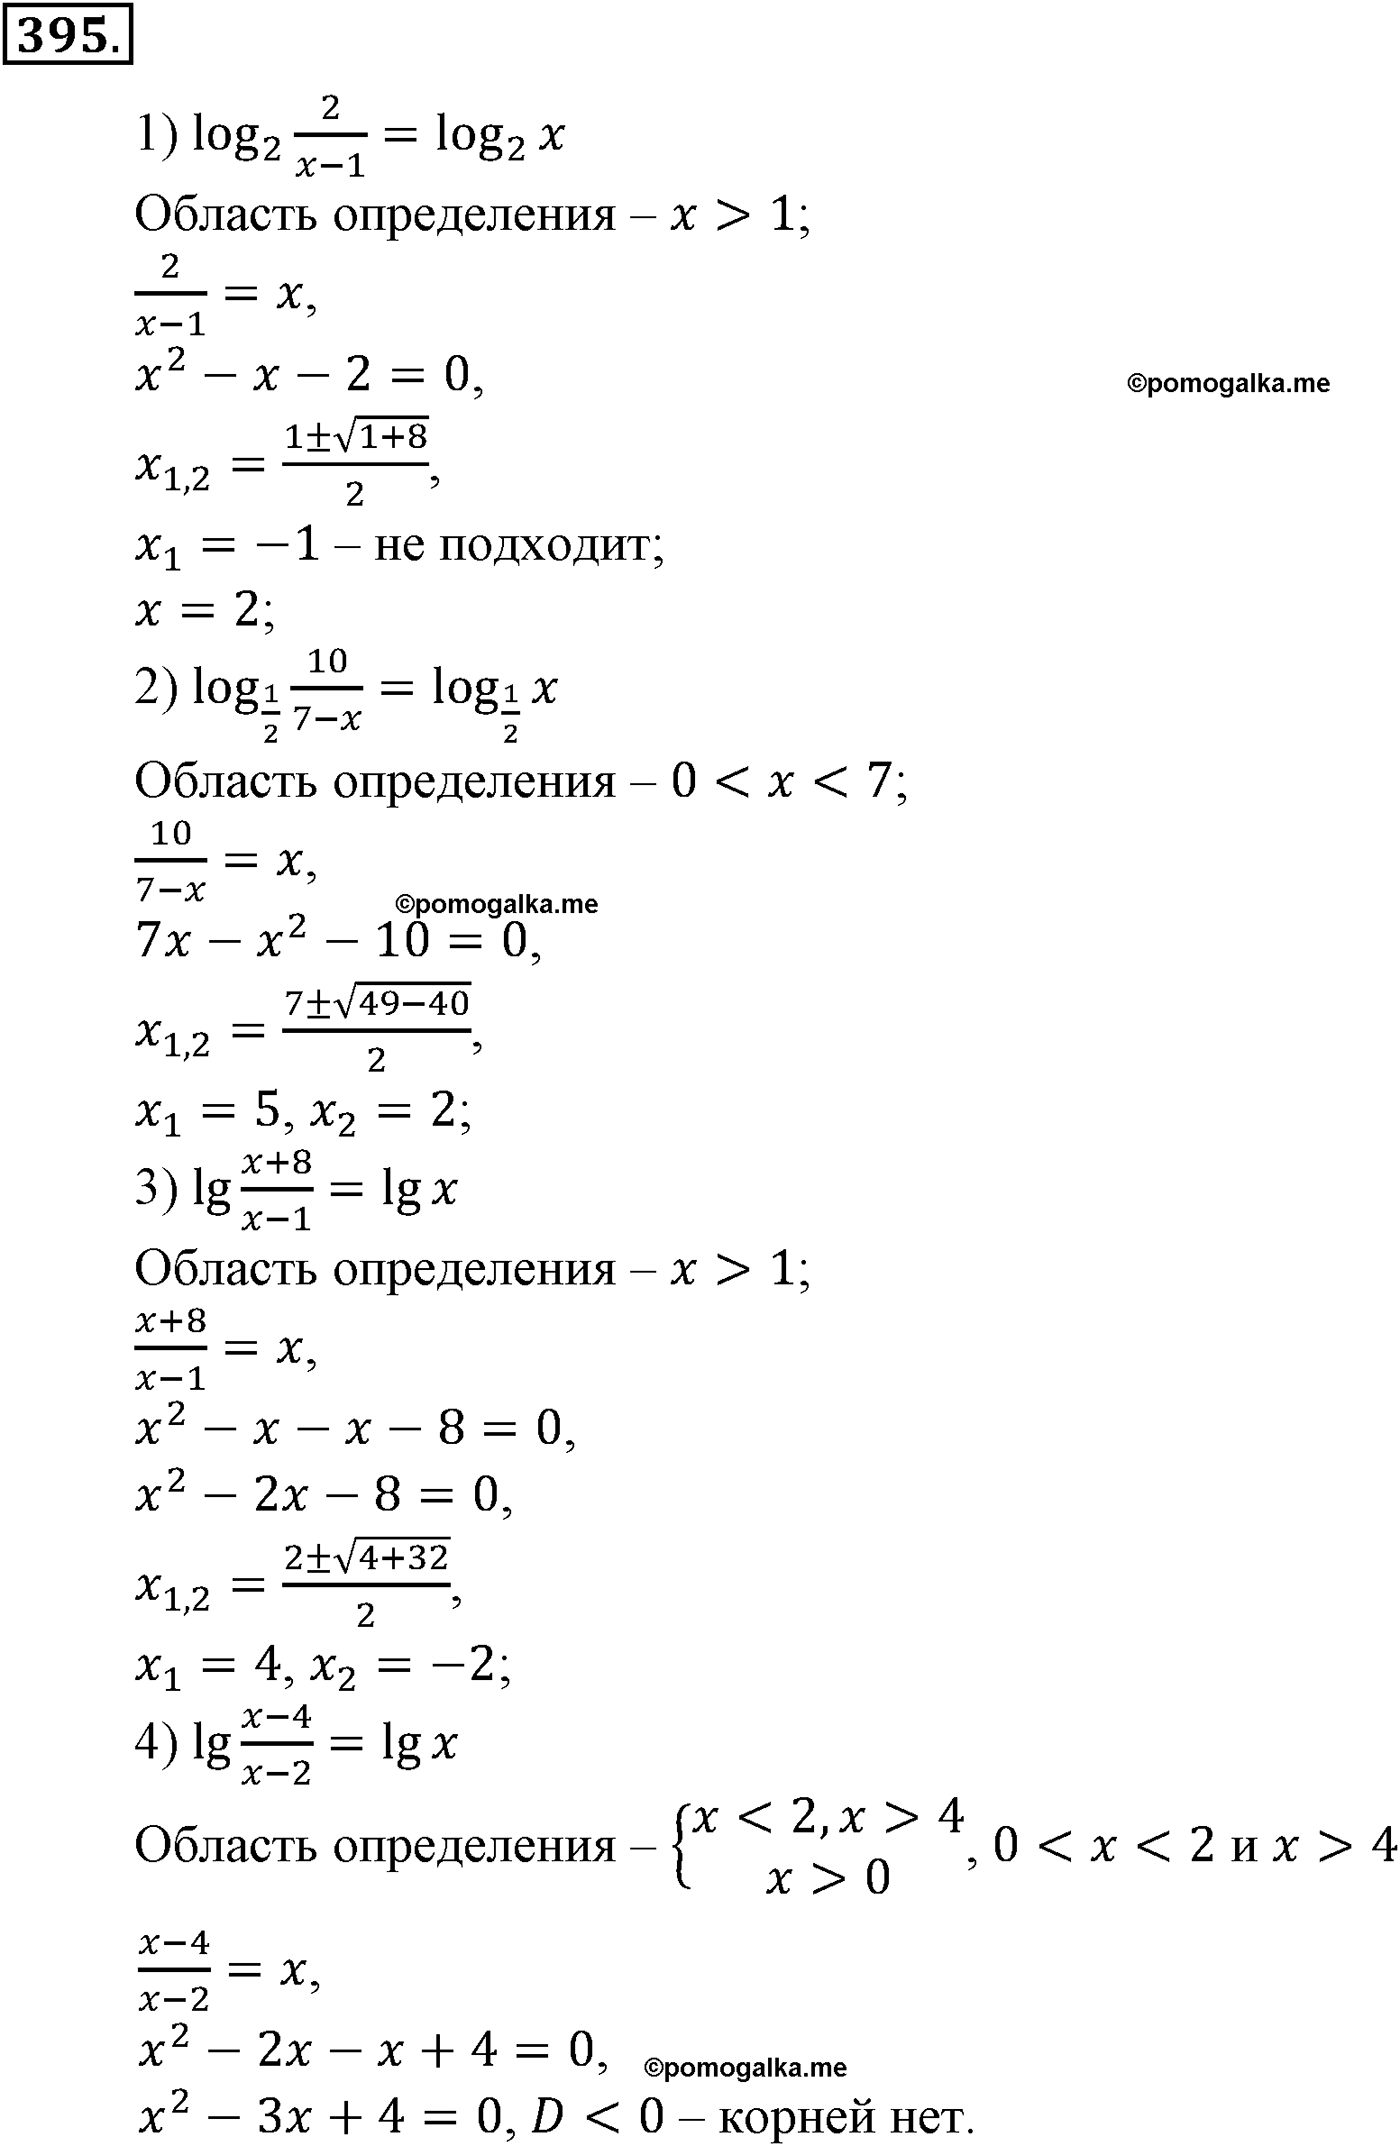 разбор задачи №395 по алгебре за 10-11 класс из учебника Алимова, Колягина